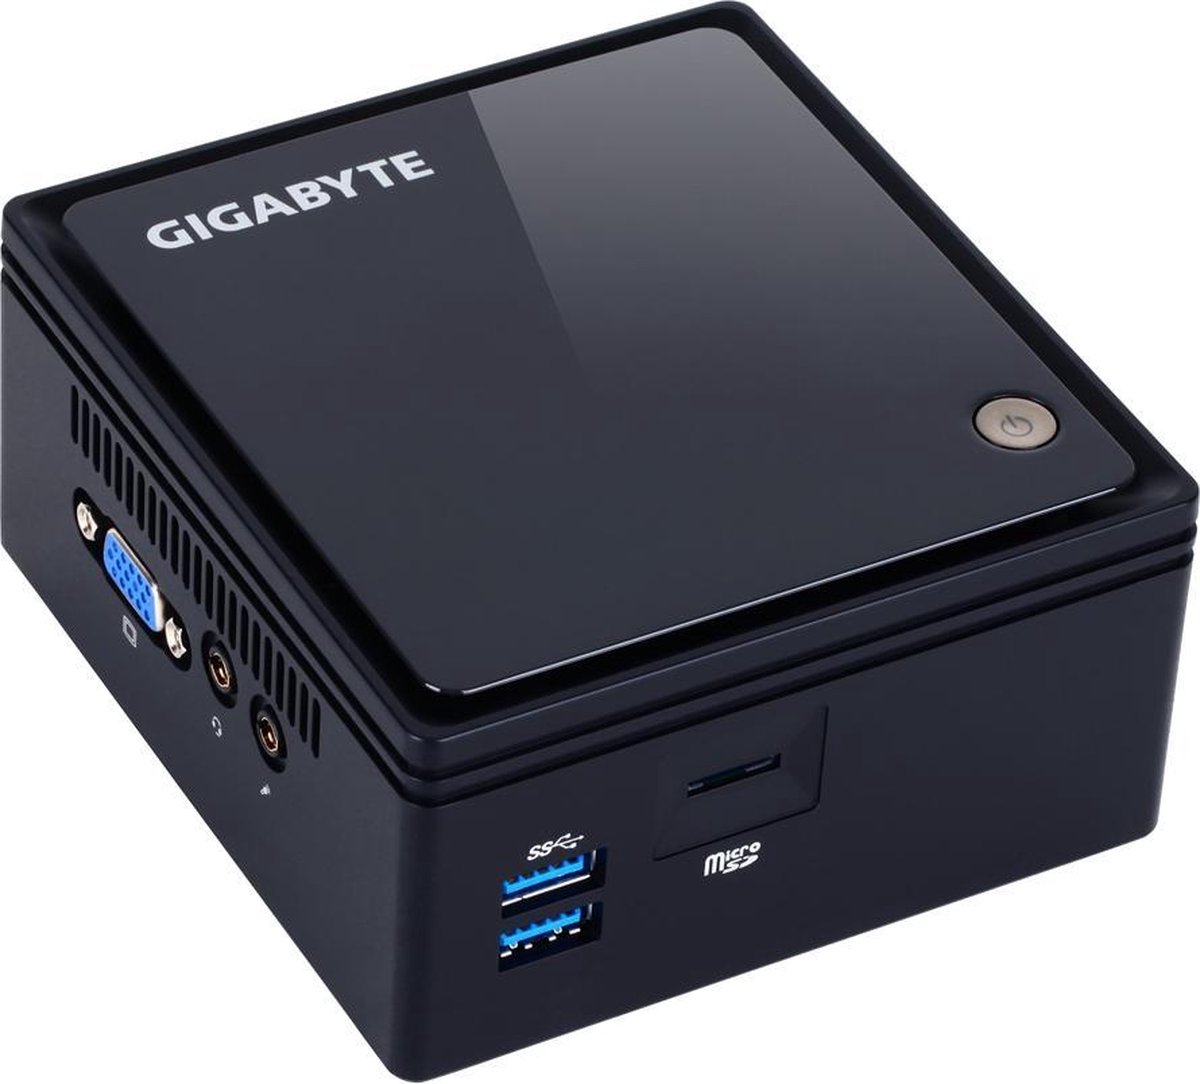 Gigabyte BRIX GB-BACE-3160 Intel Celeron N3160